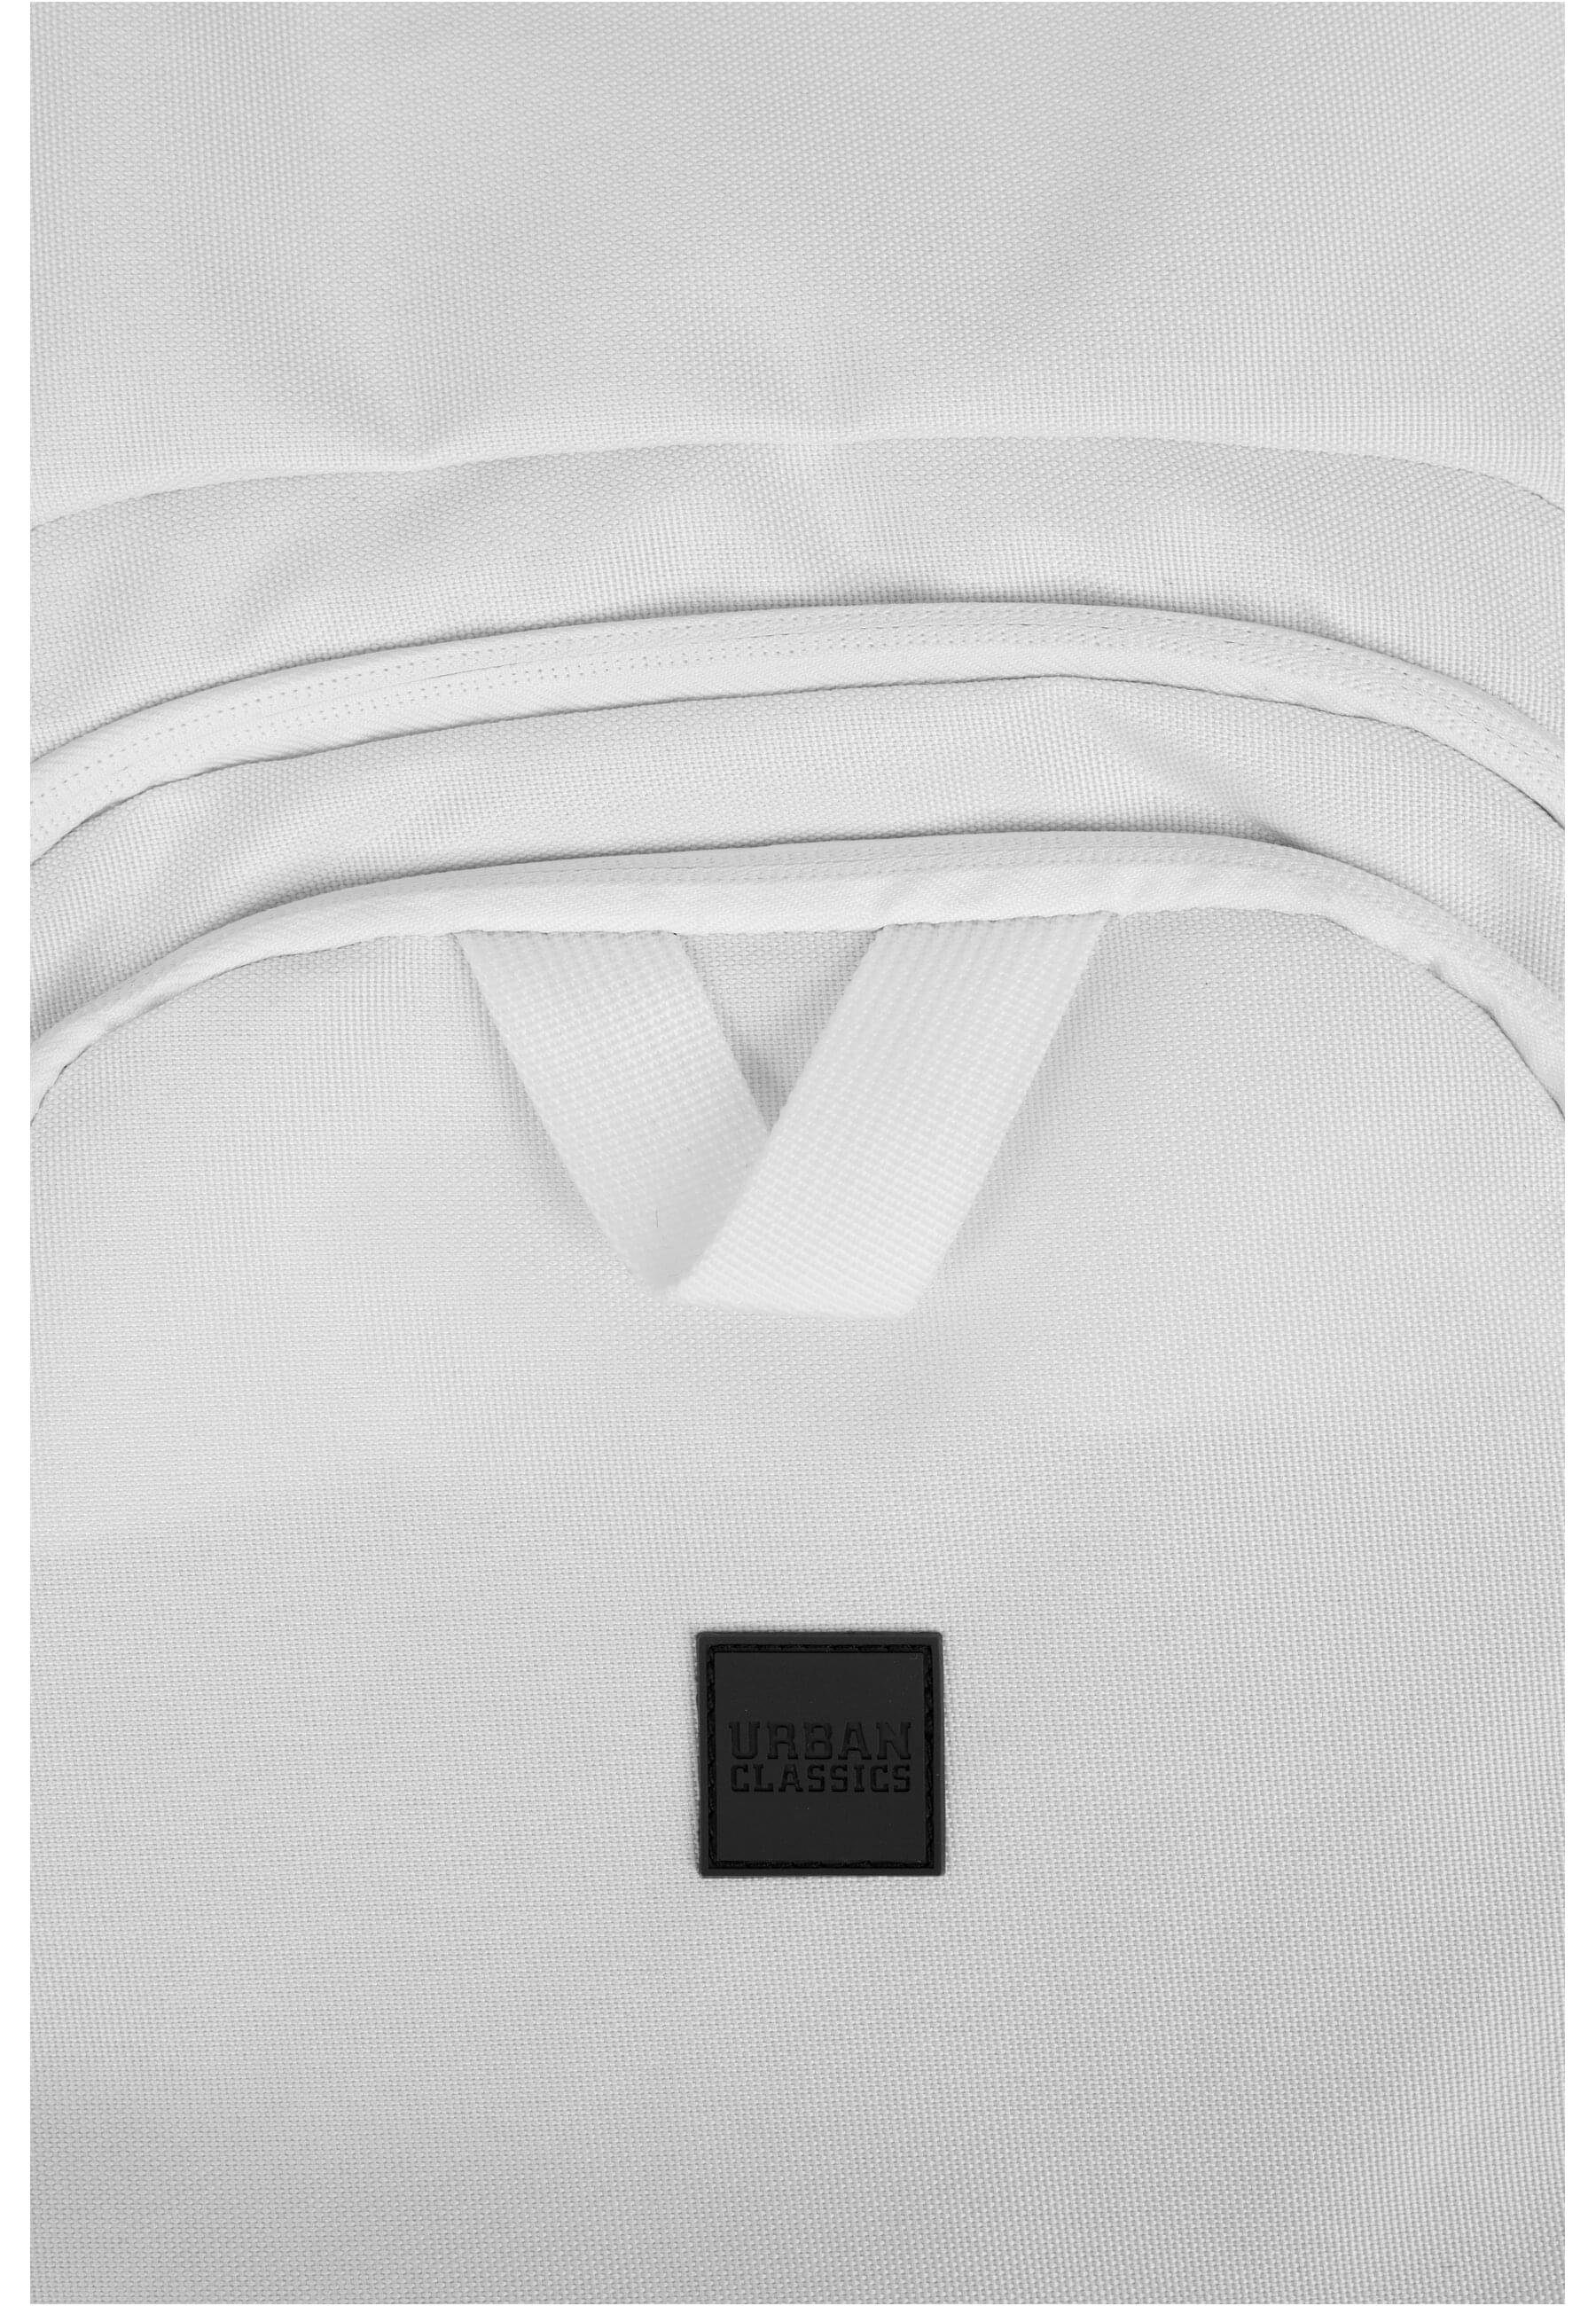 URBAN CLASSICS Handtasche Unisex Bag Ball black/white/white Gym (1-tlg)